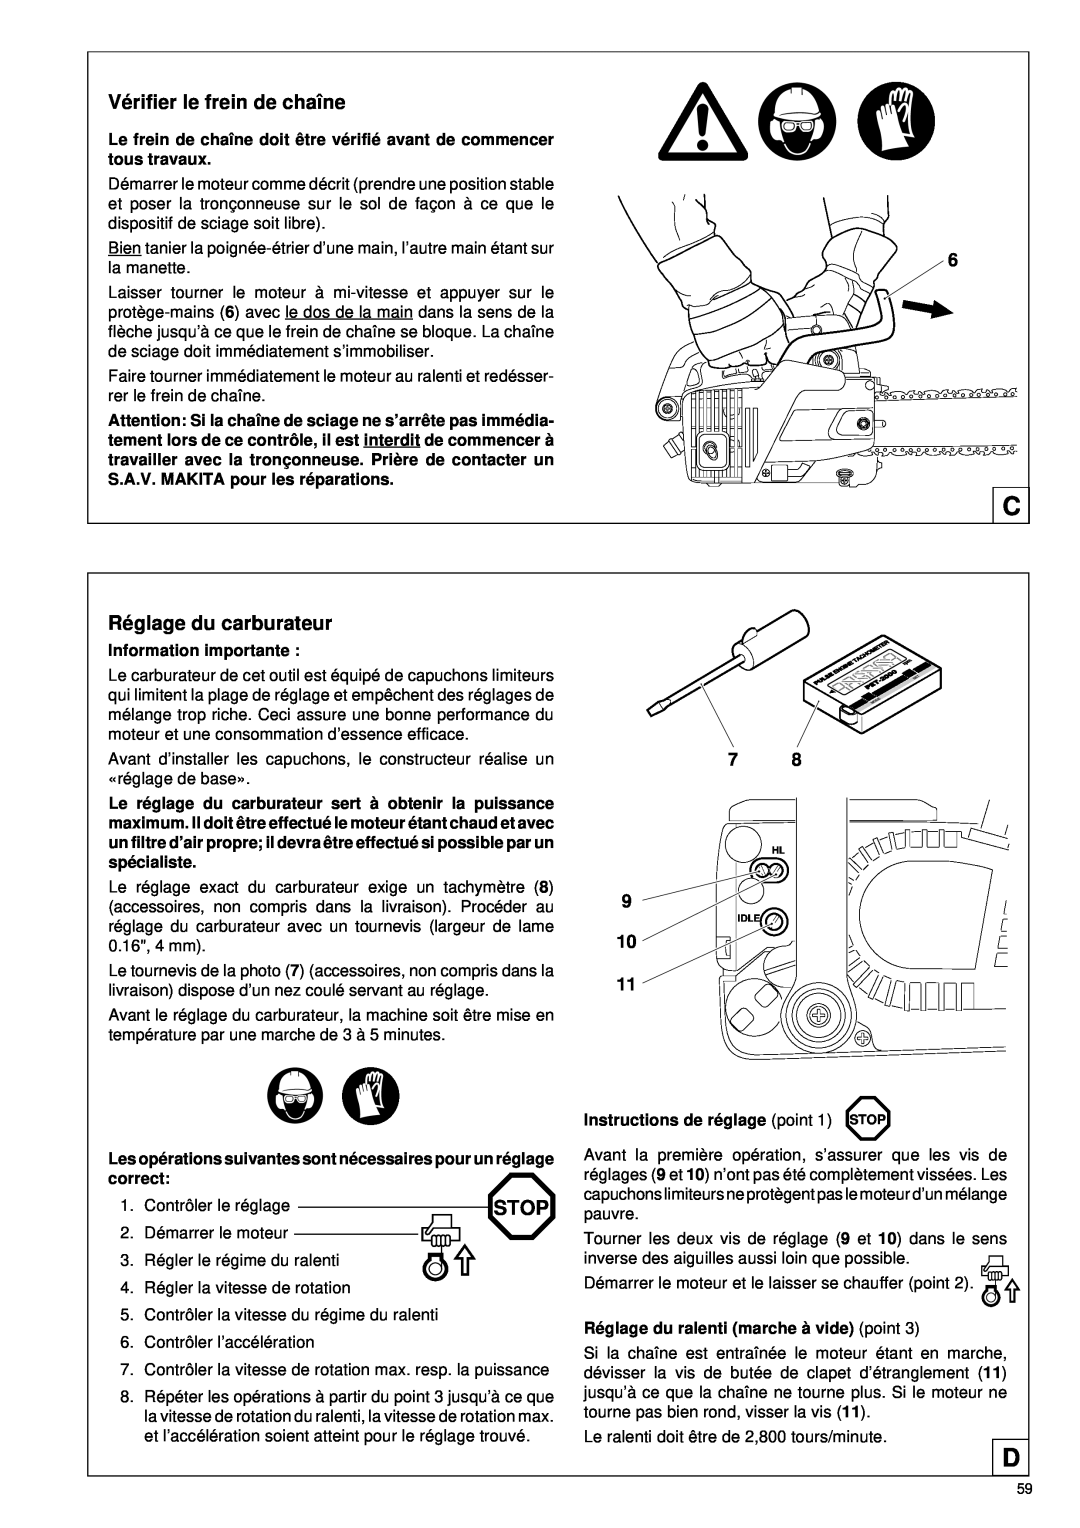 Makita DCS 330 TH instruction manual Vé rifier le frein de chaîne, Ré glage du carburateur, Stop 